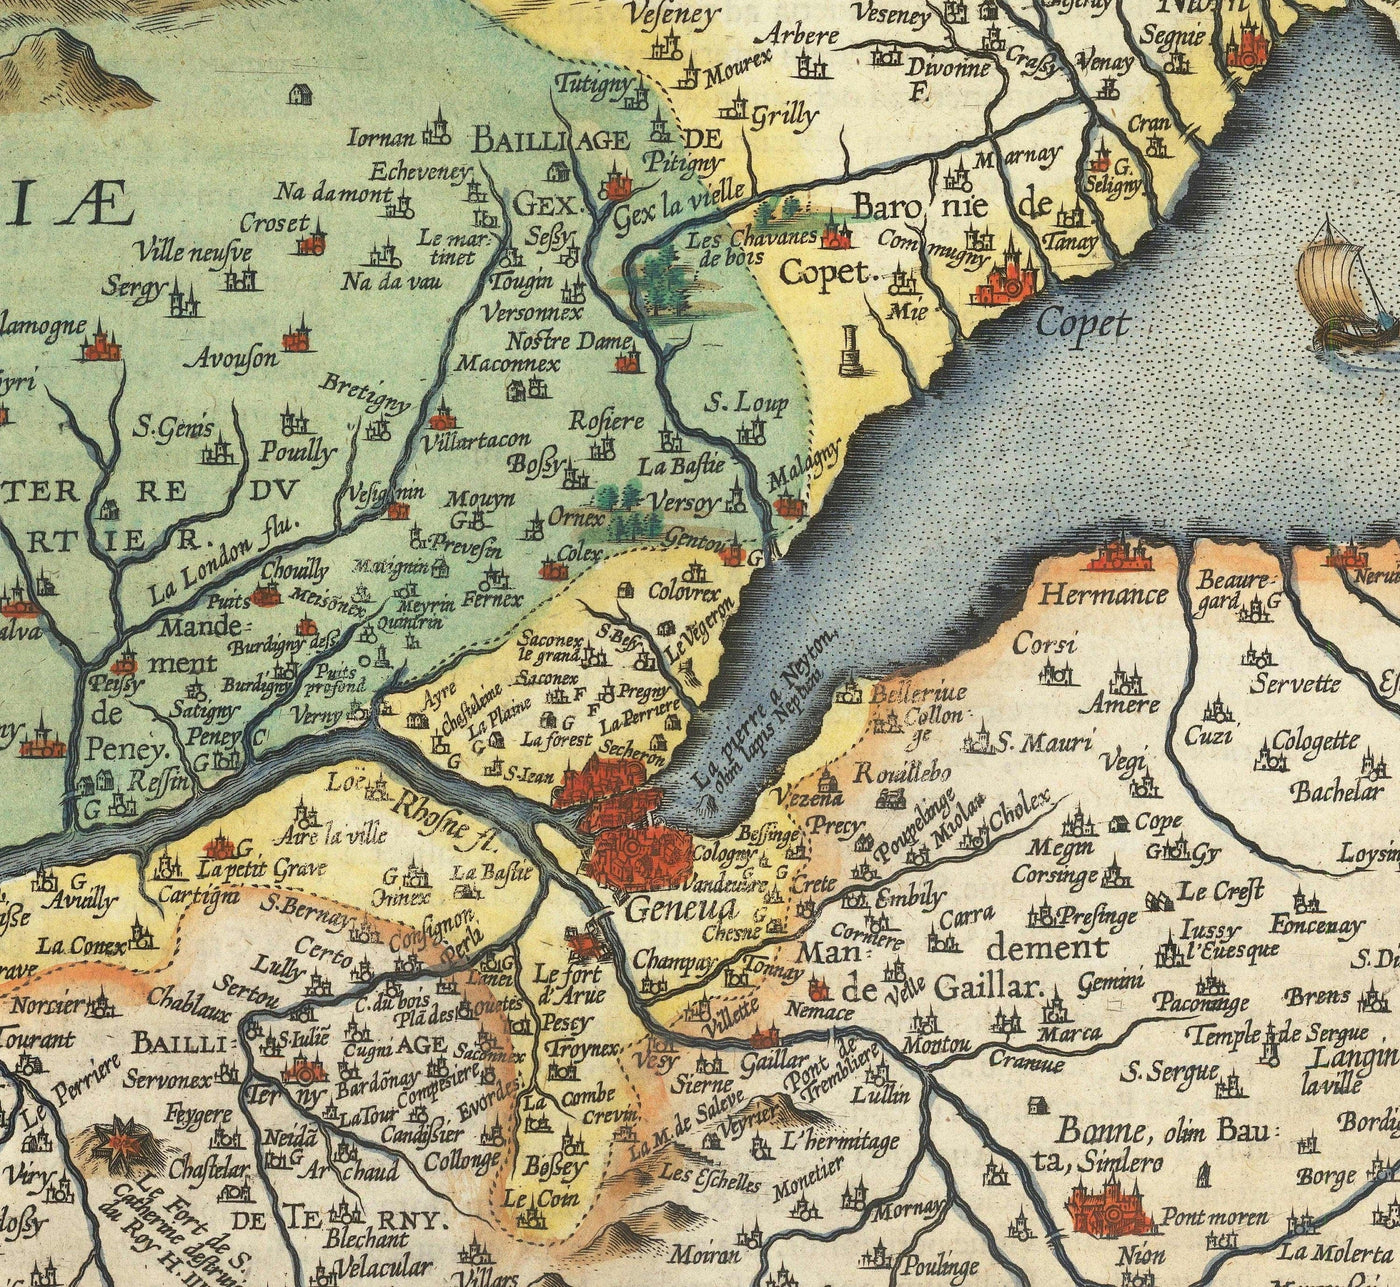 Antiguo mapa del lago Lemán de Abraham Ortelius, 1573 - Lausana, Montreux, Thonon-les-Bains, Evian, Nyon, Morges